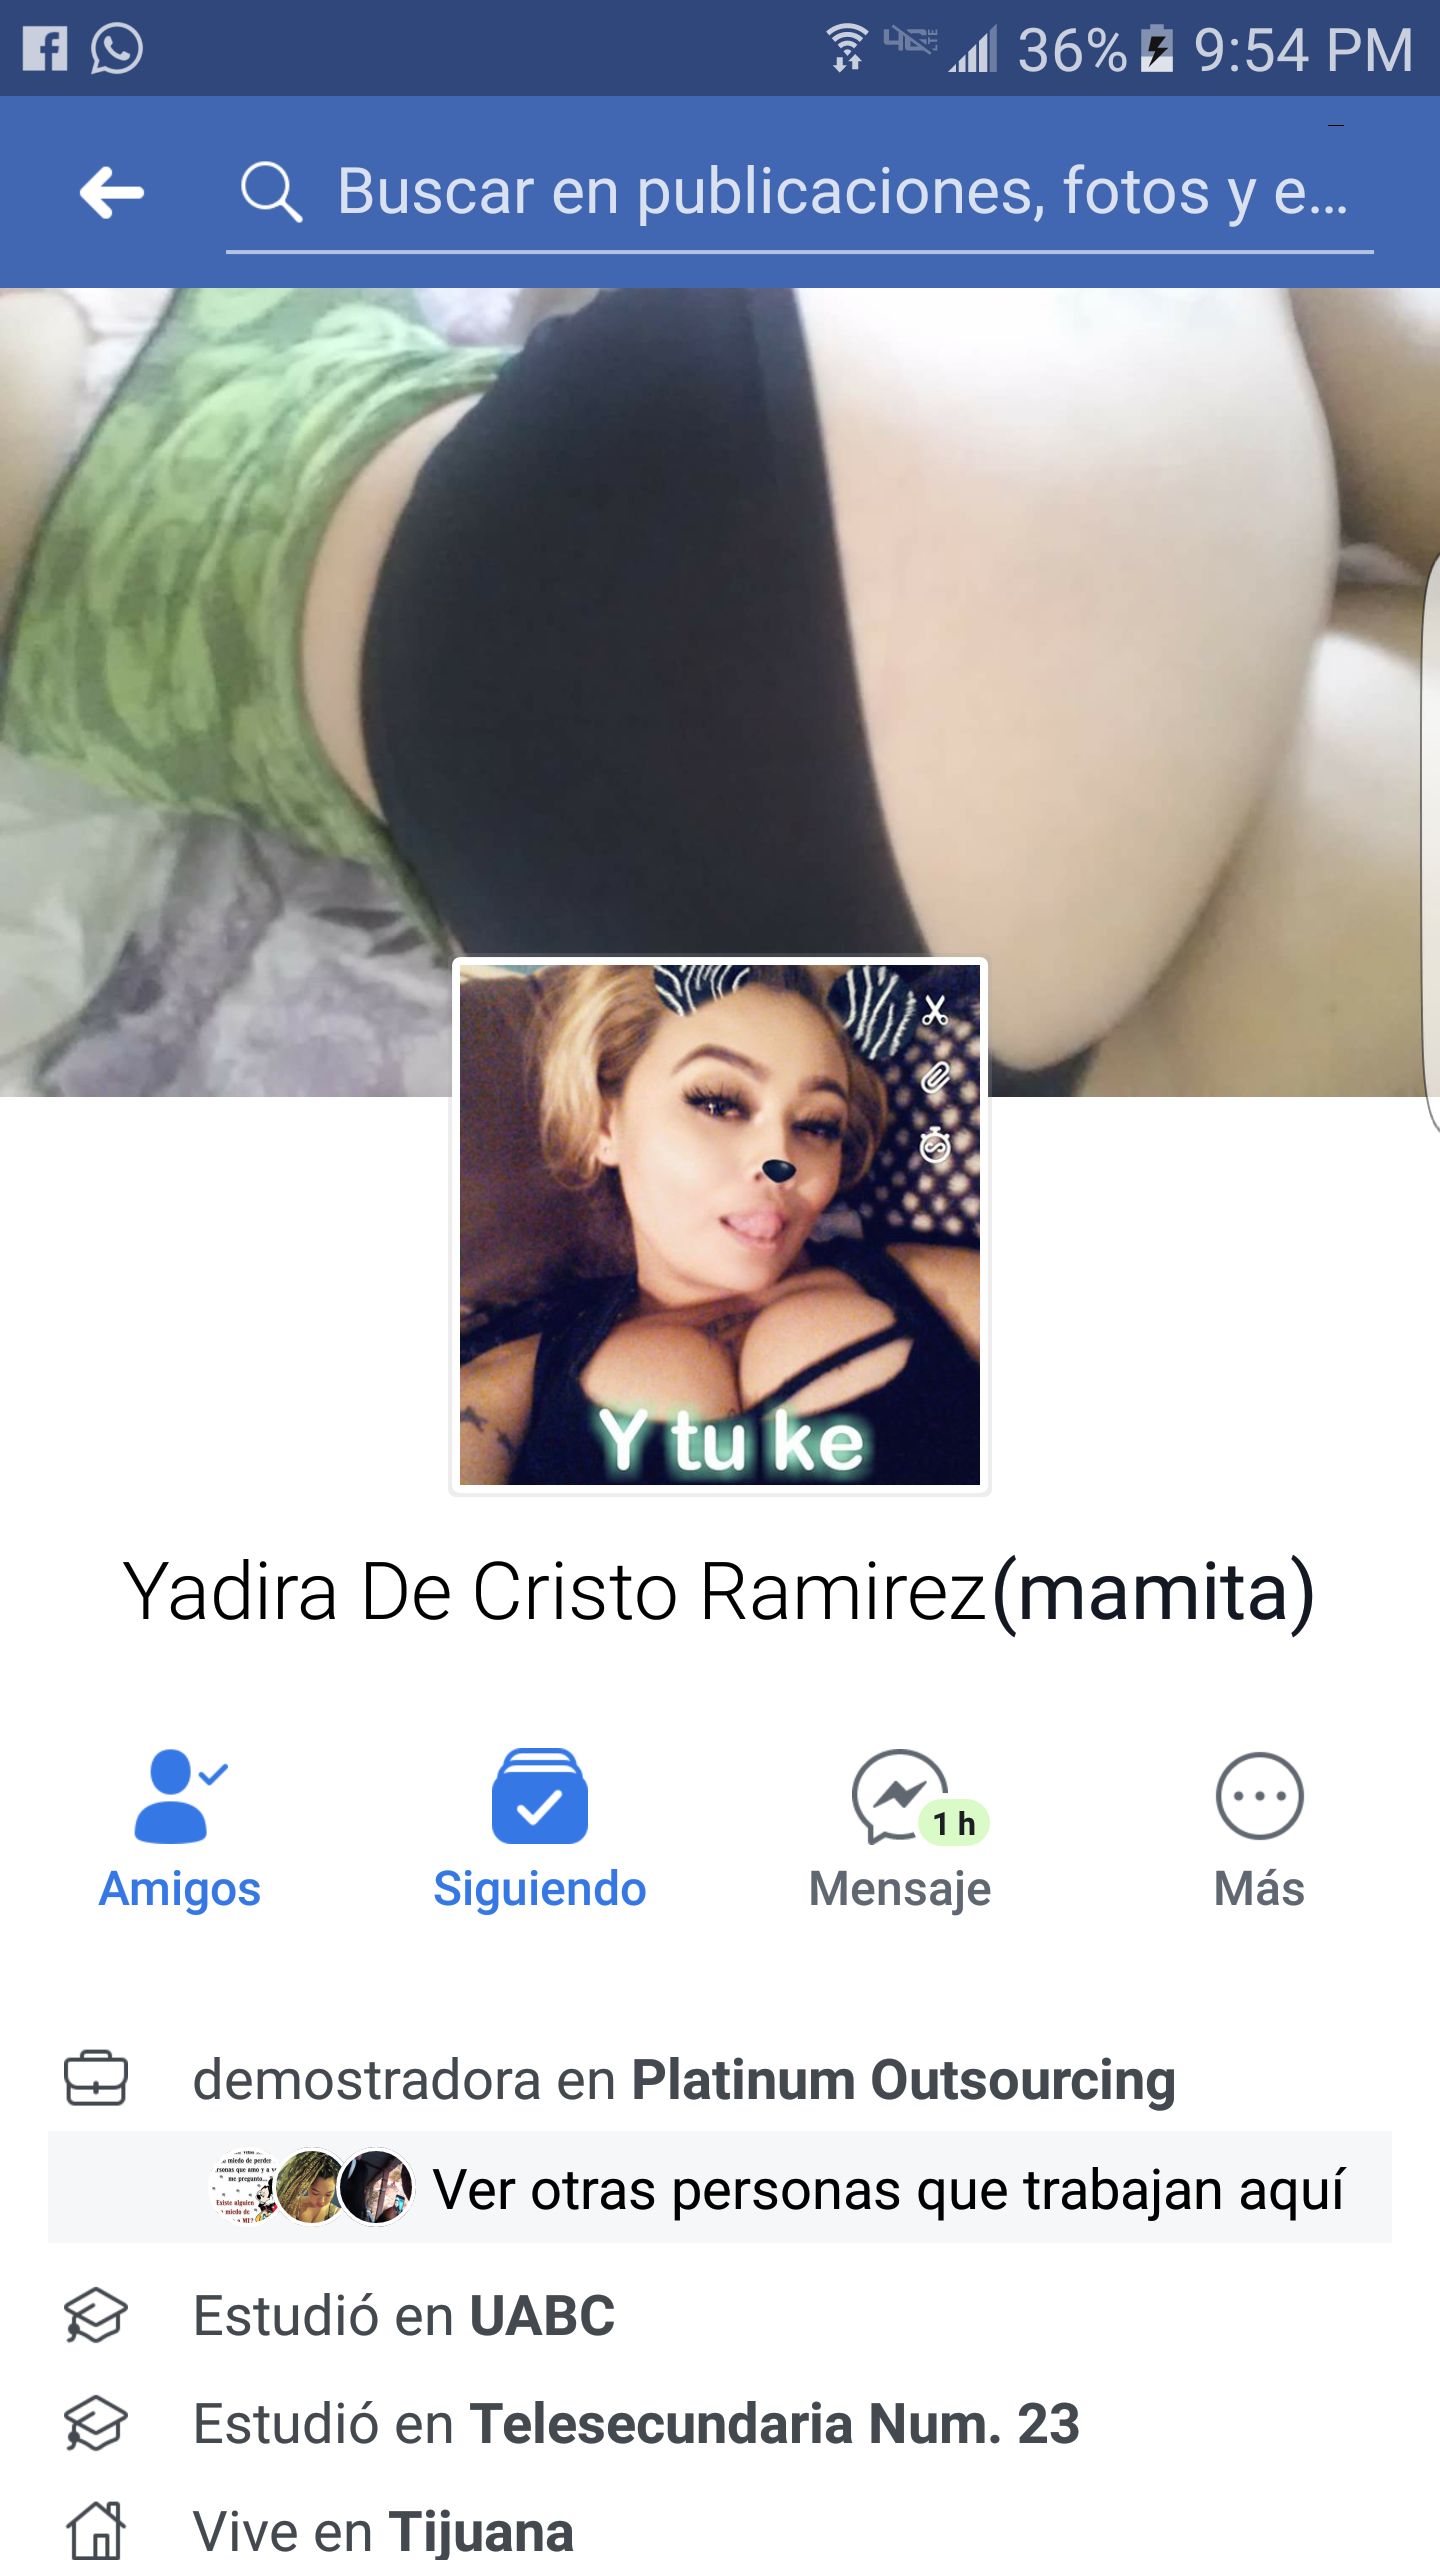 Yadira Ramirez